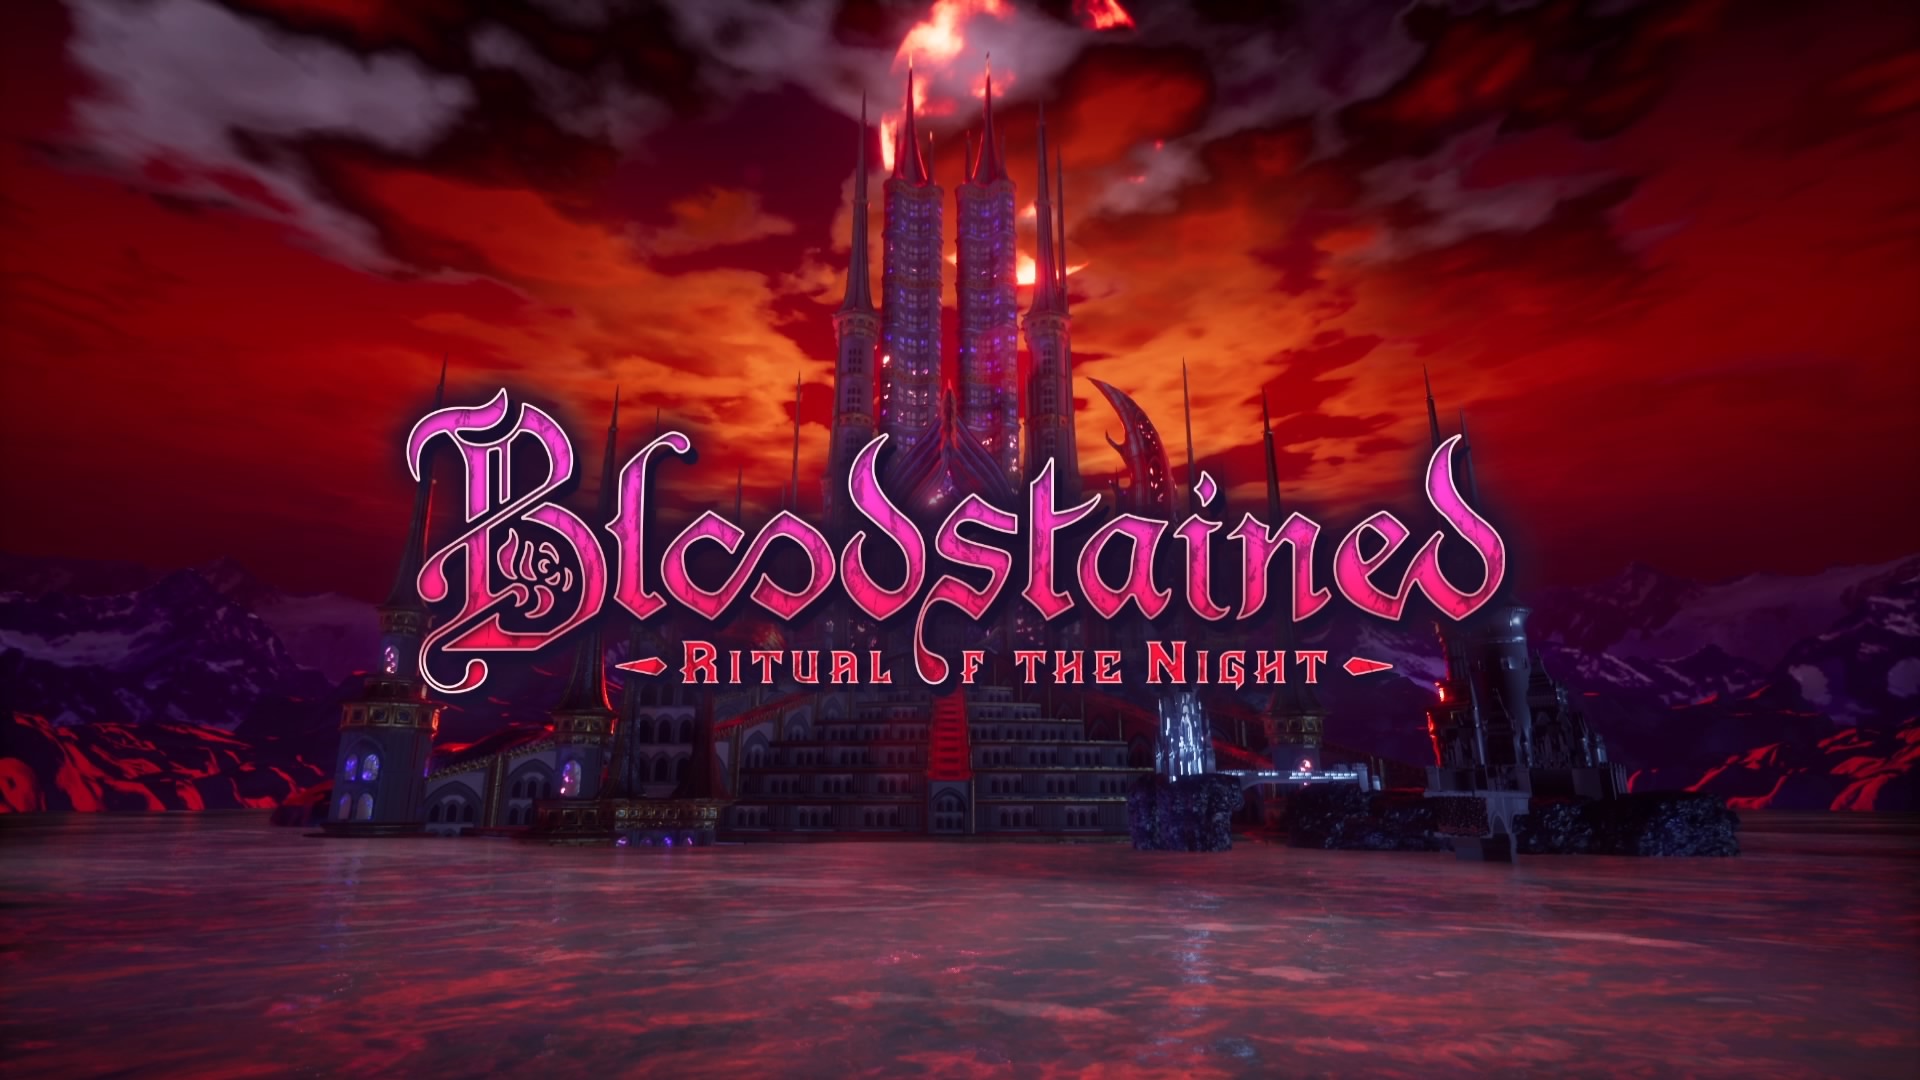 دنباله بازی Bloodstained: Ritual of the Night در حال توسعه است